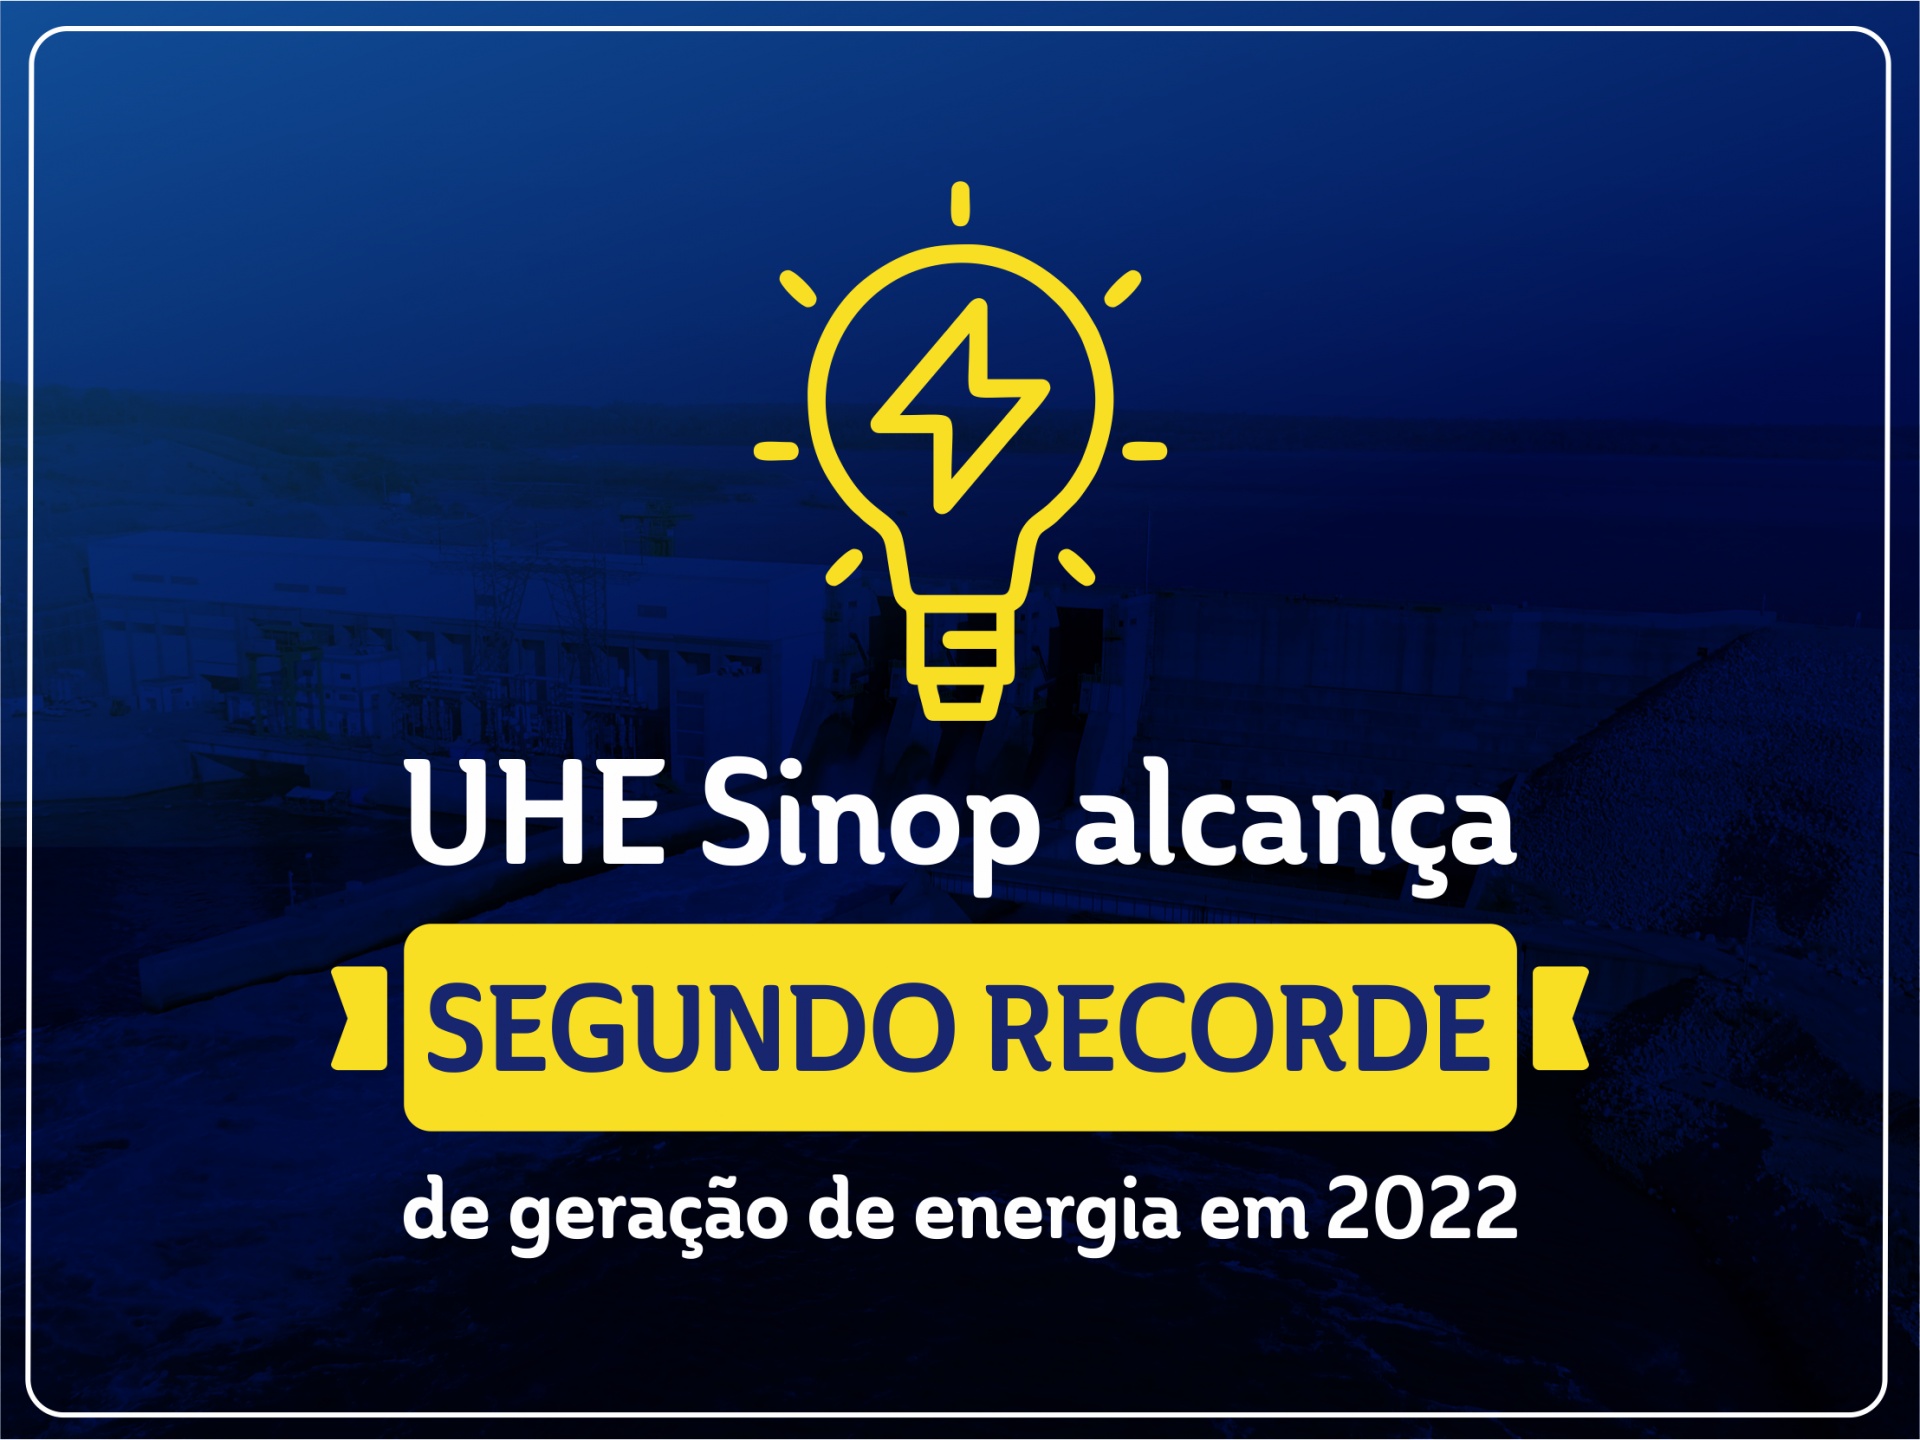 UHE Sinop alcança segundo recorde de geração de energia em 2022